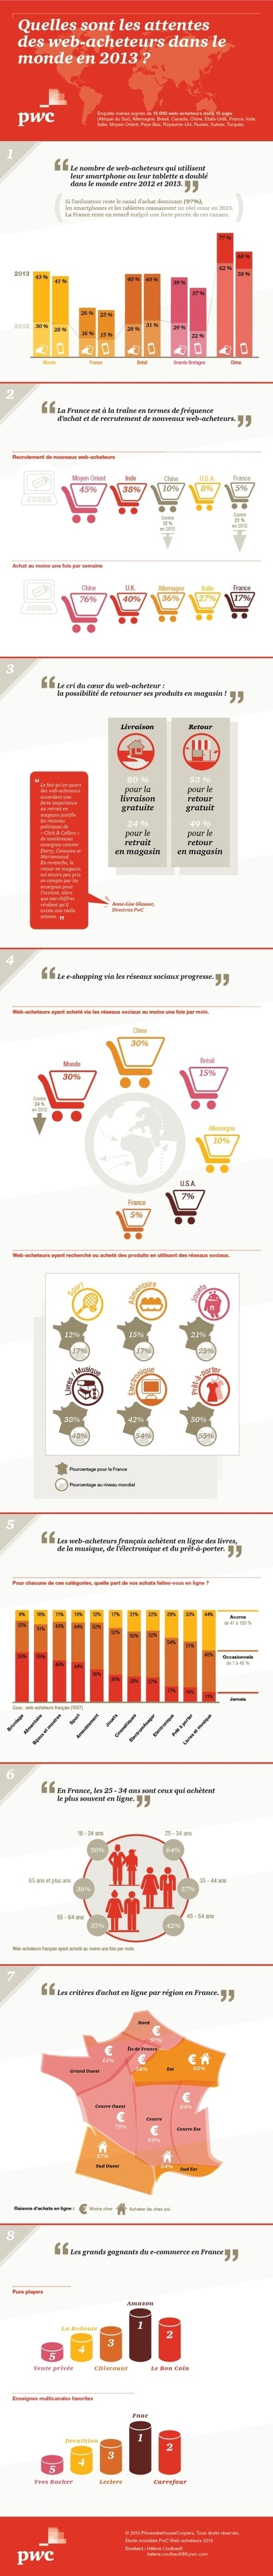 Infographie : Les comportements d'achat en ligne dans le monde | Time to Learn | Scoop.it